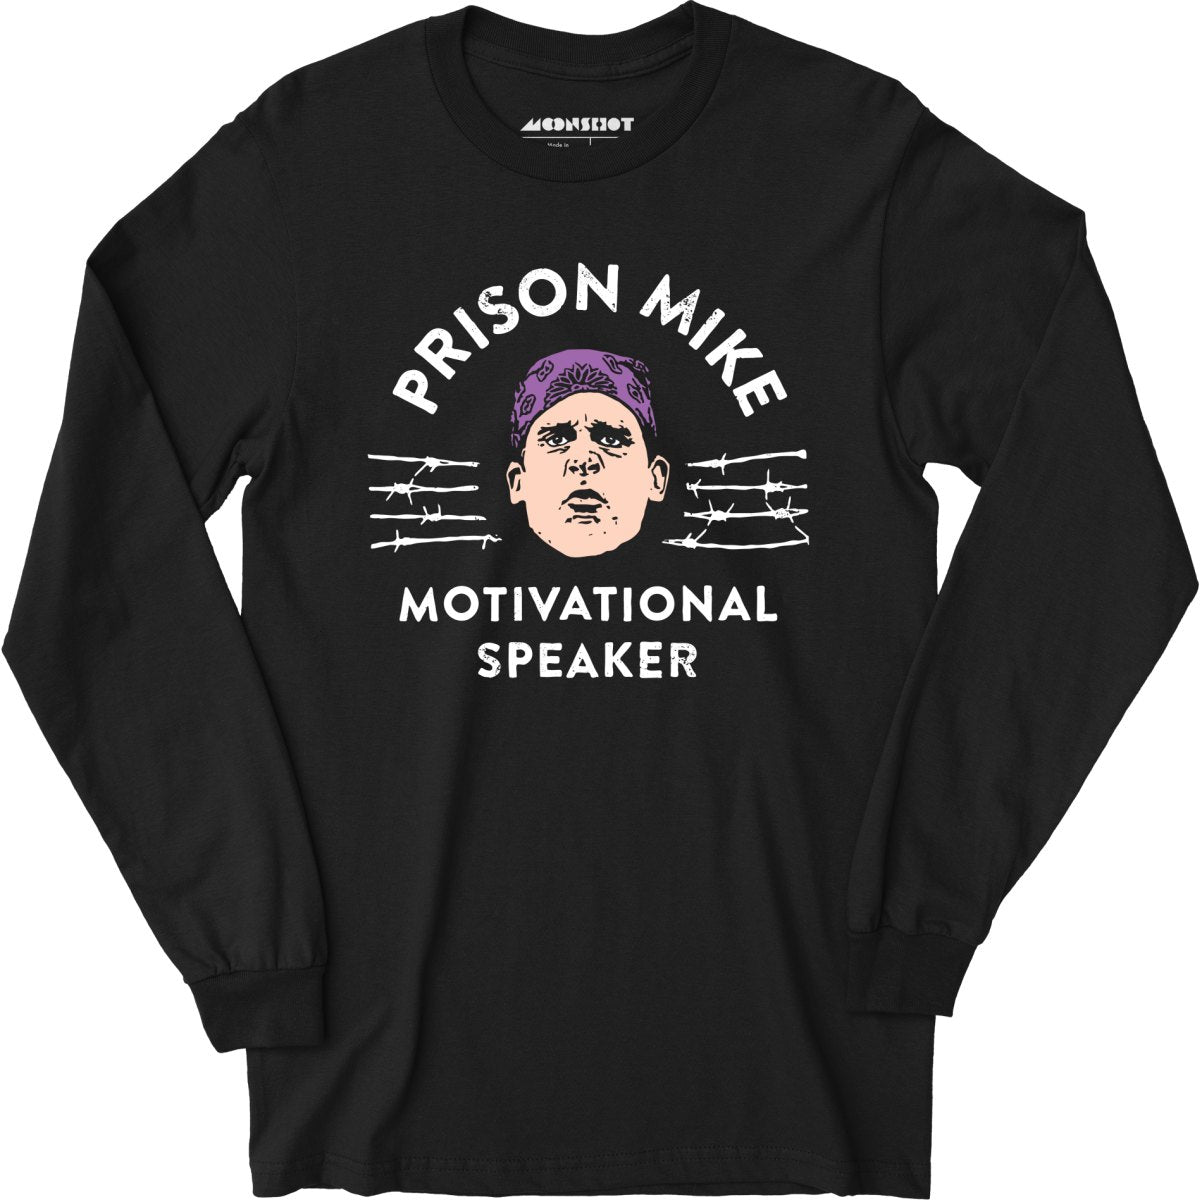 Prison Mike - Motivational Speaker - Long Sleeve T-Shirt